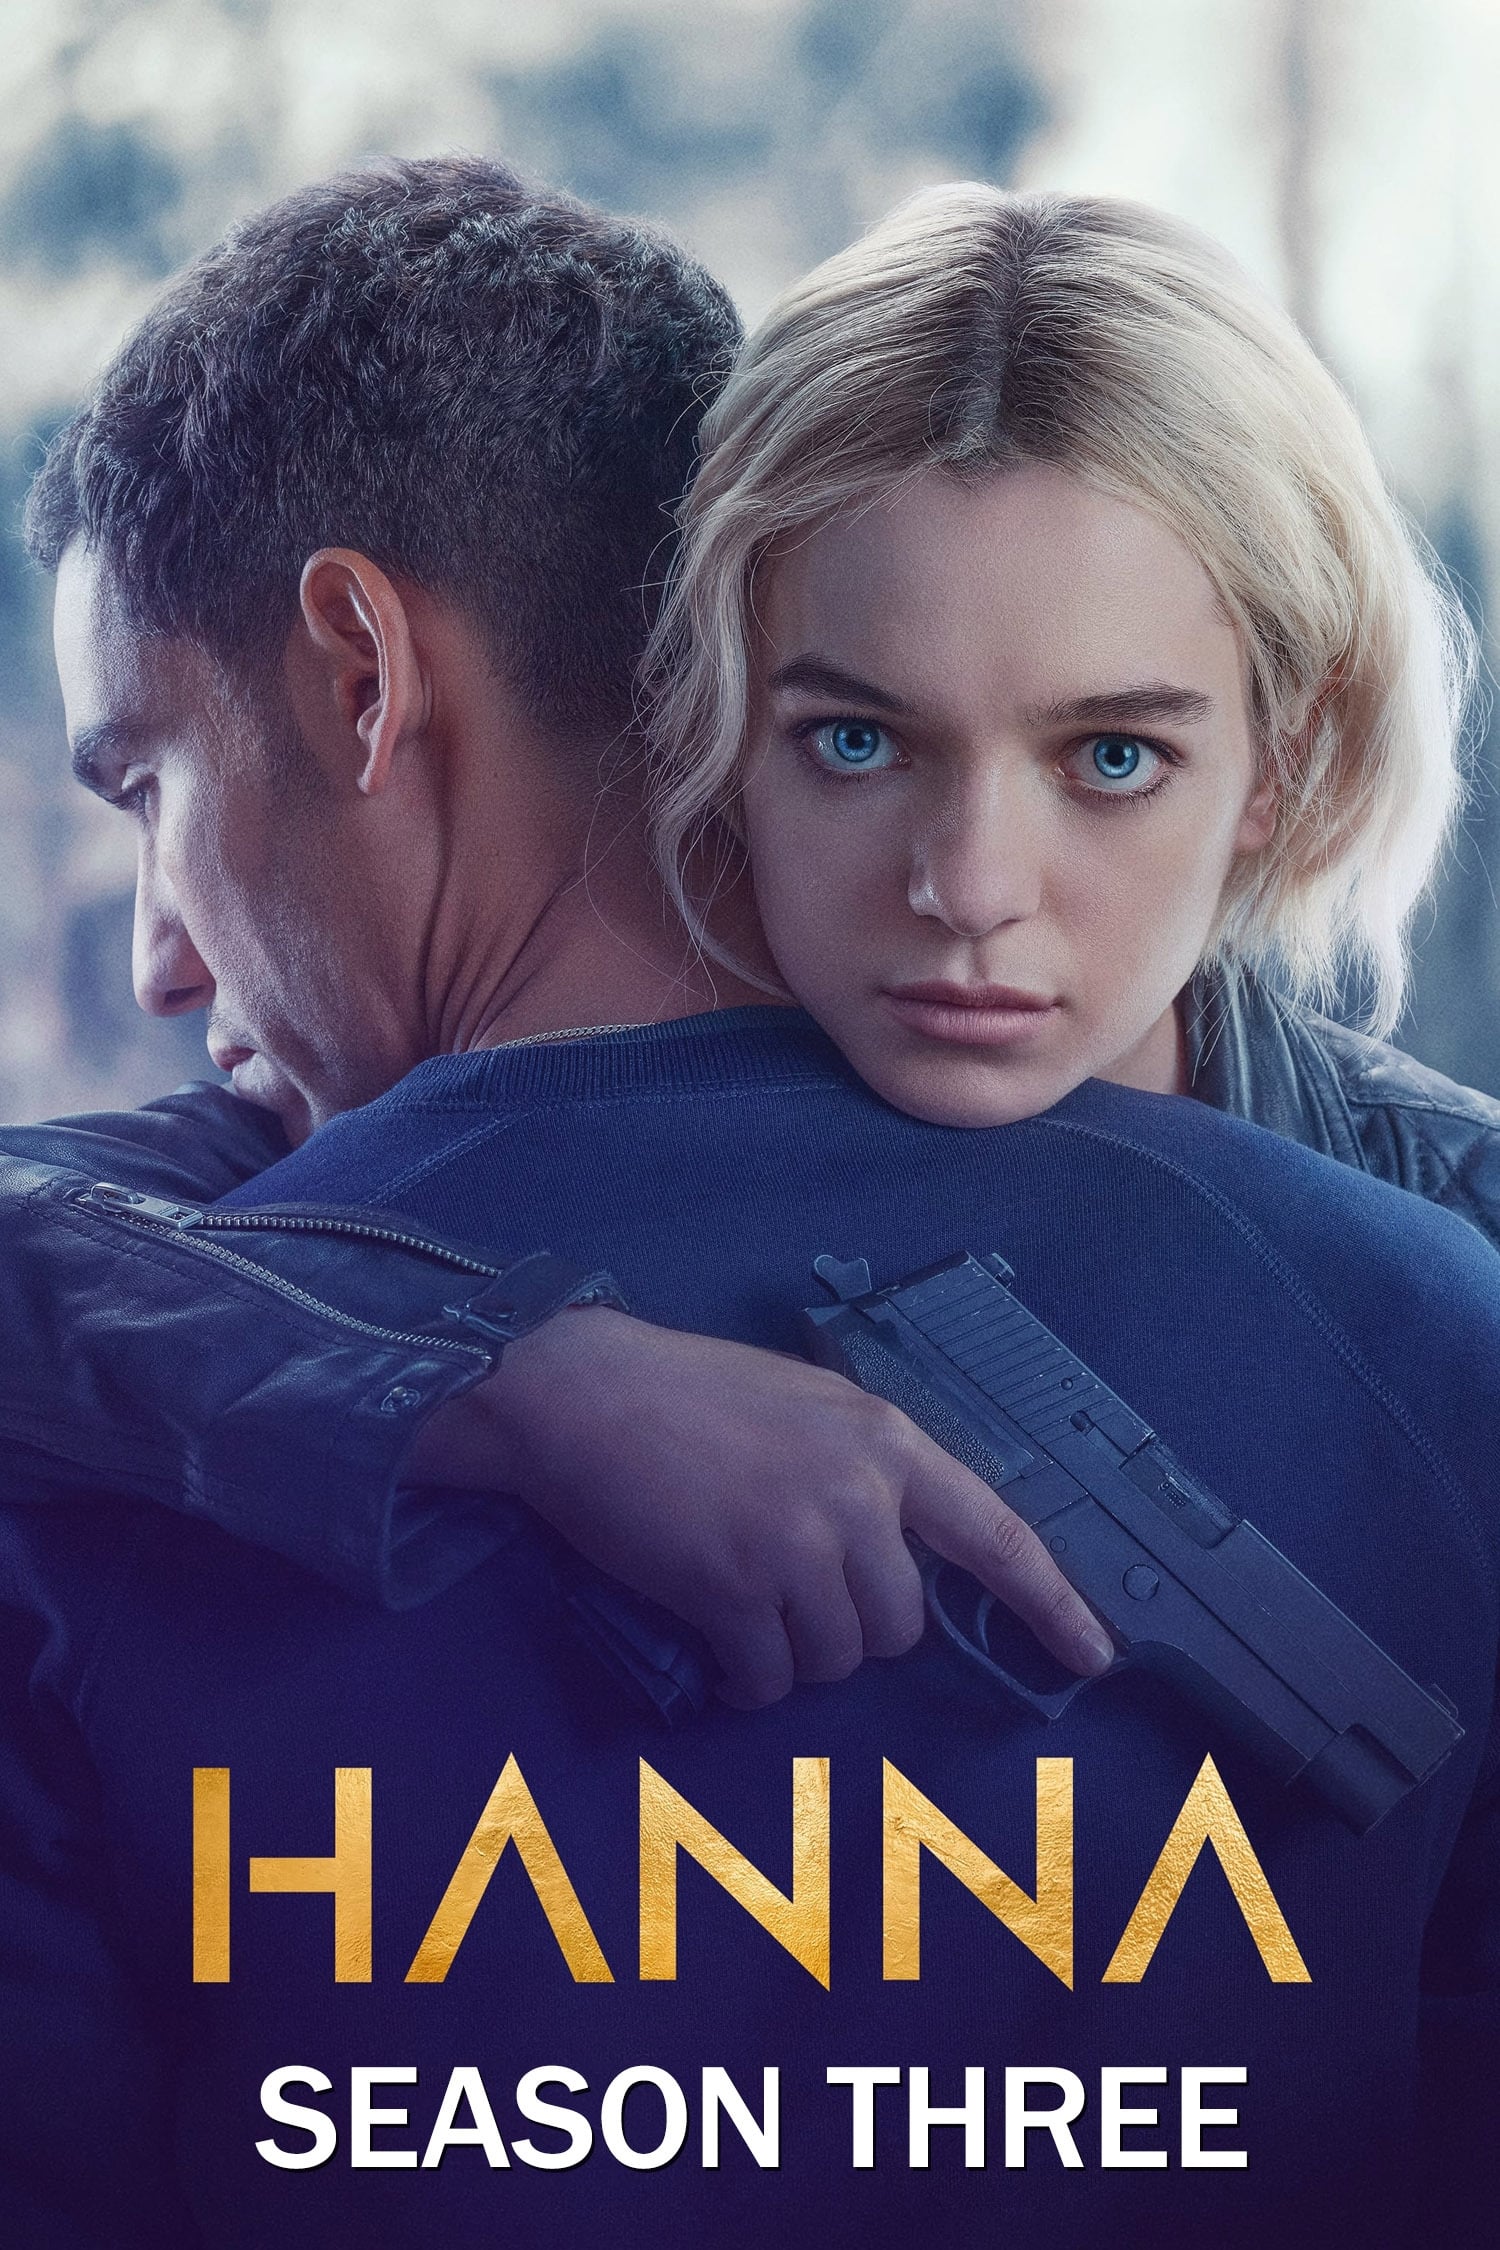 Hanna Season 3 (2021) ซับไทย ตอนที่ 1-6